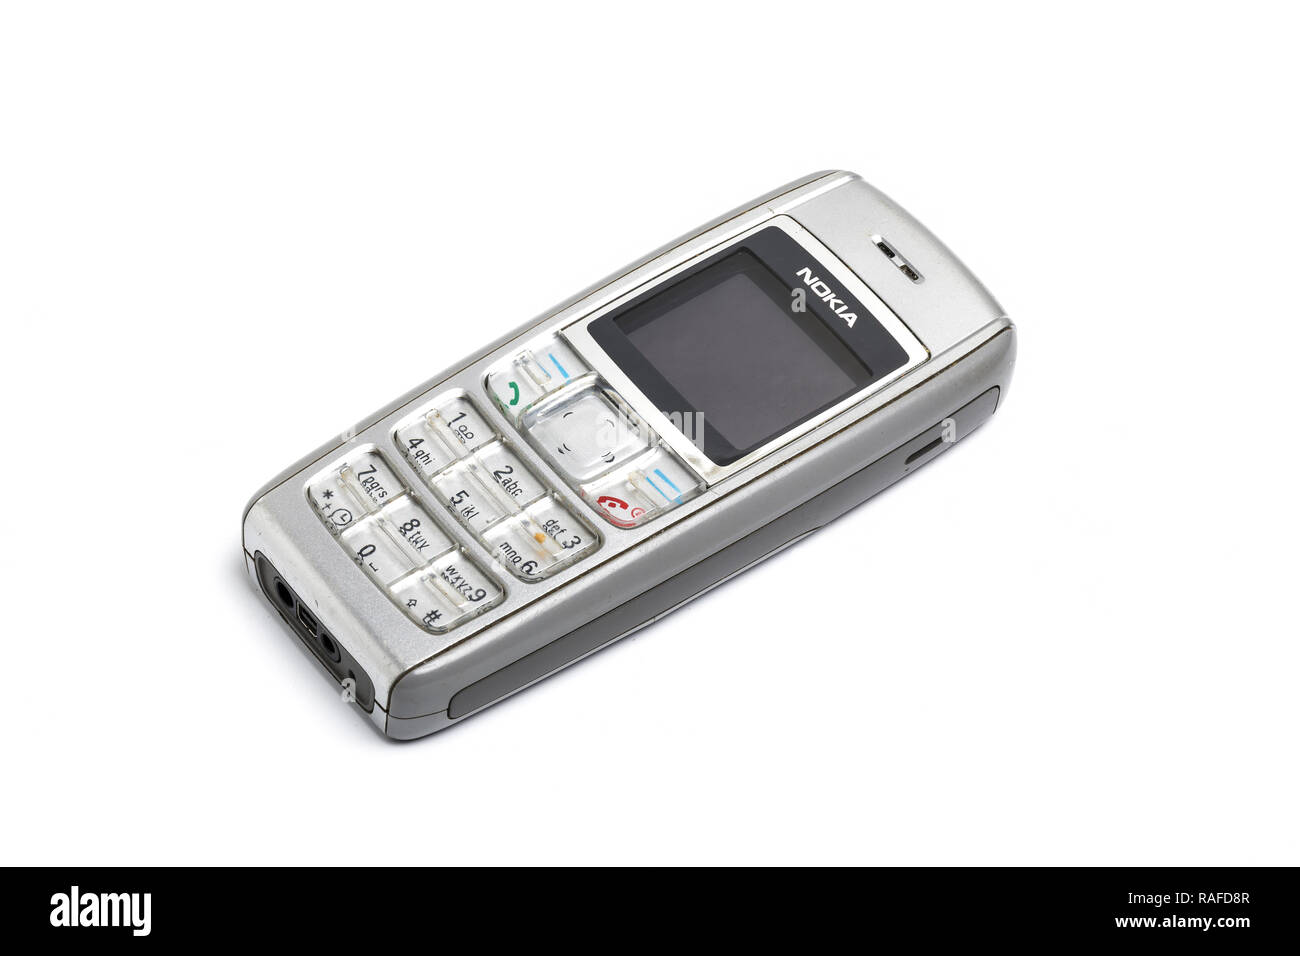 Nokia 1600 teléfono móvil o teléfono celular, a partir de 2006. Bien utilizados. Foto de stock